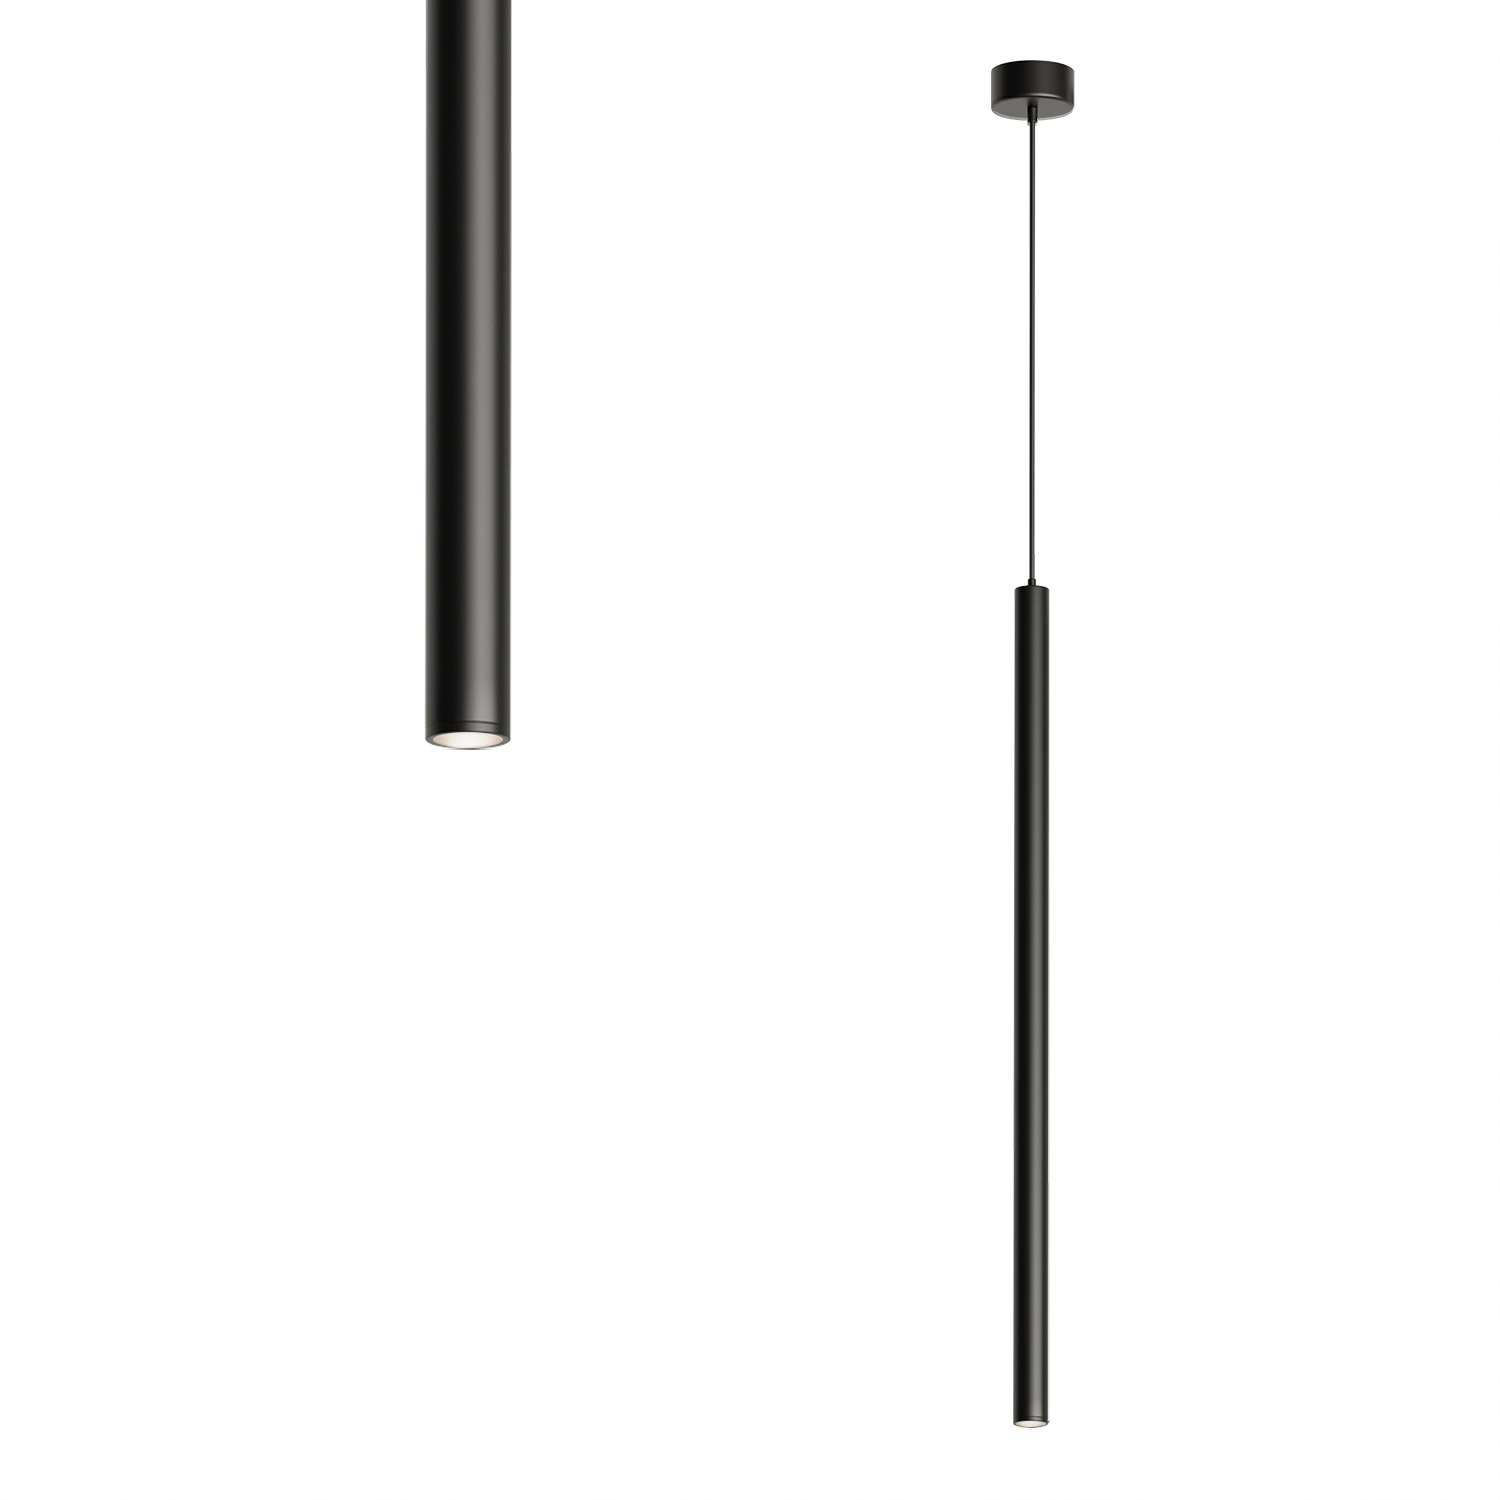 DK4304-BK Подвесной светильник со встроенным светодиодом, 5W, IP 20, 4000K, черный, алюминий